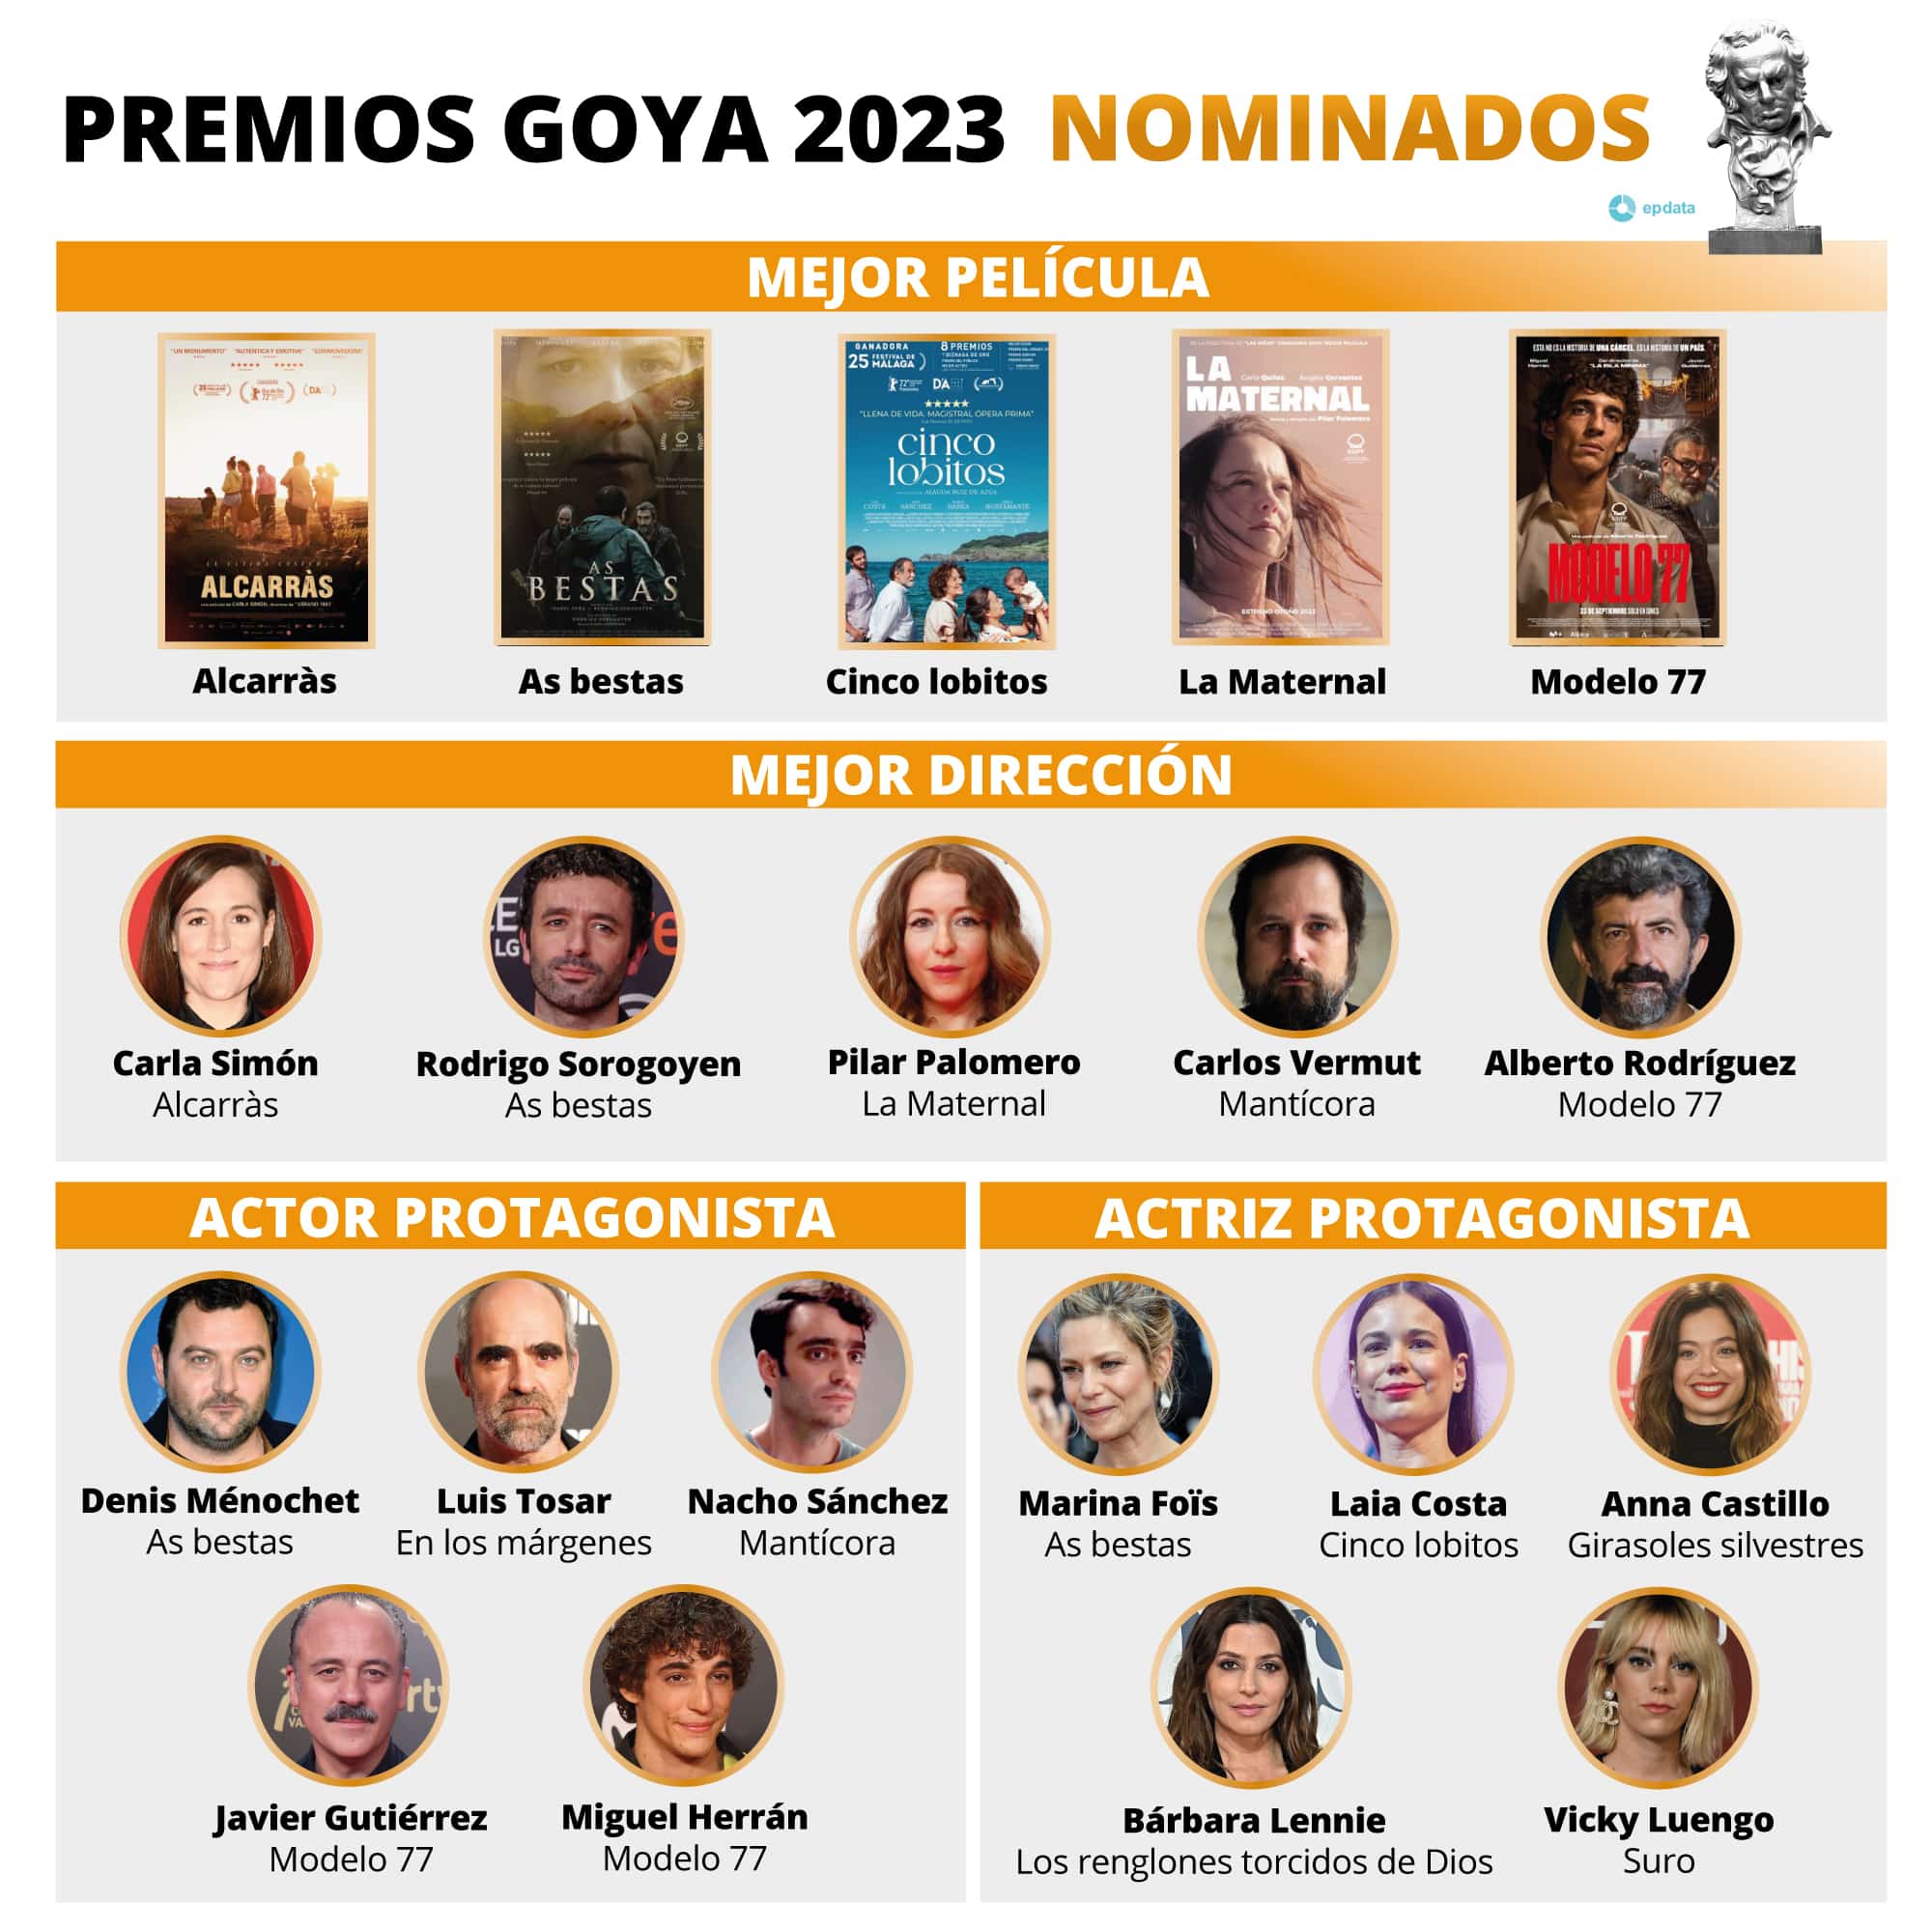 Premios Goya 2023 favoritos, novedades y posibles sorpresas de la gran